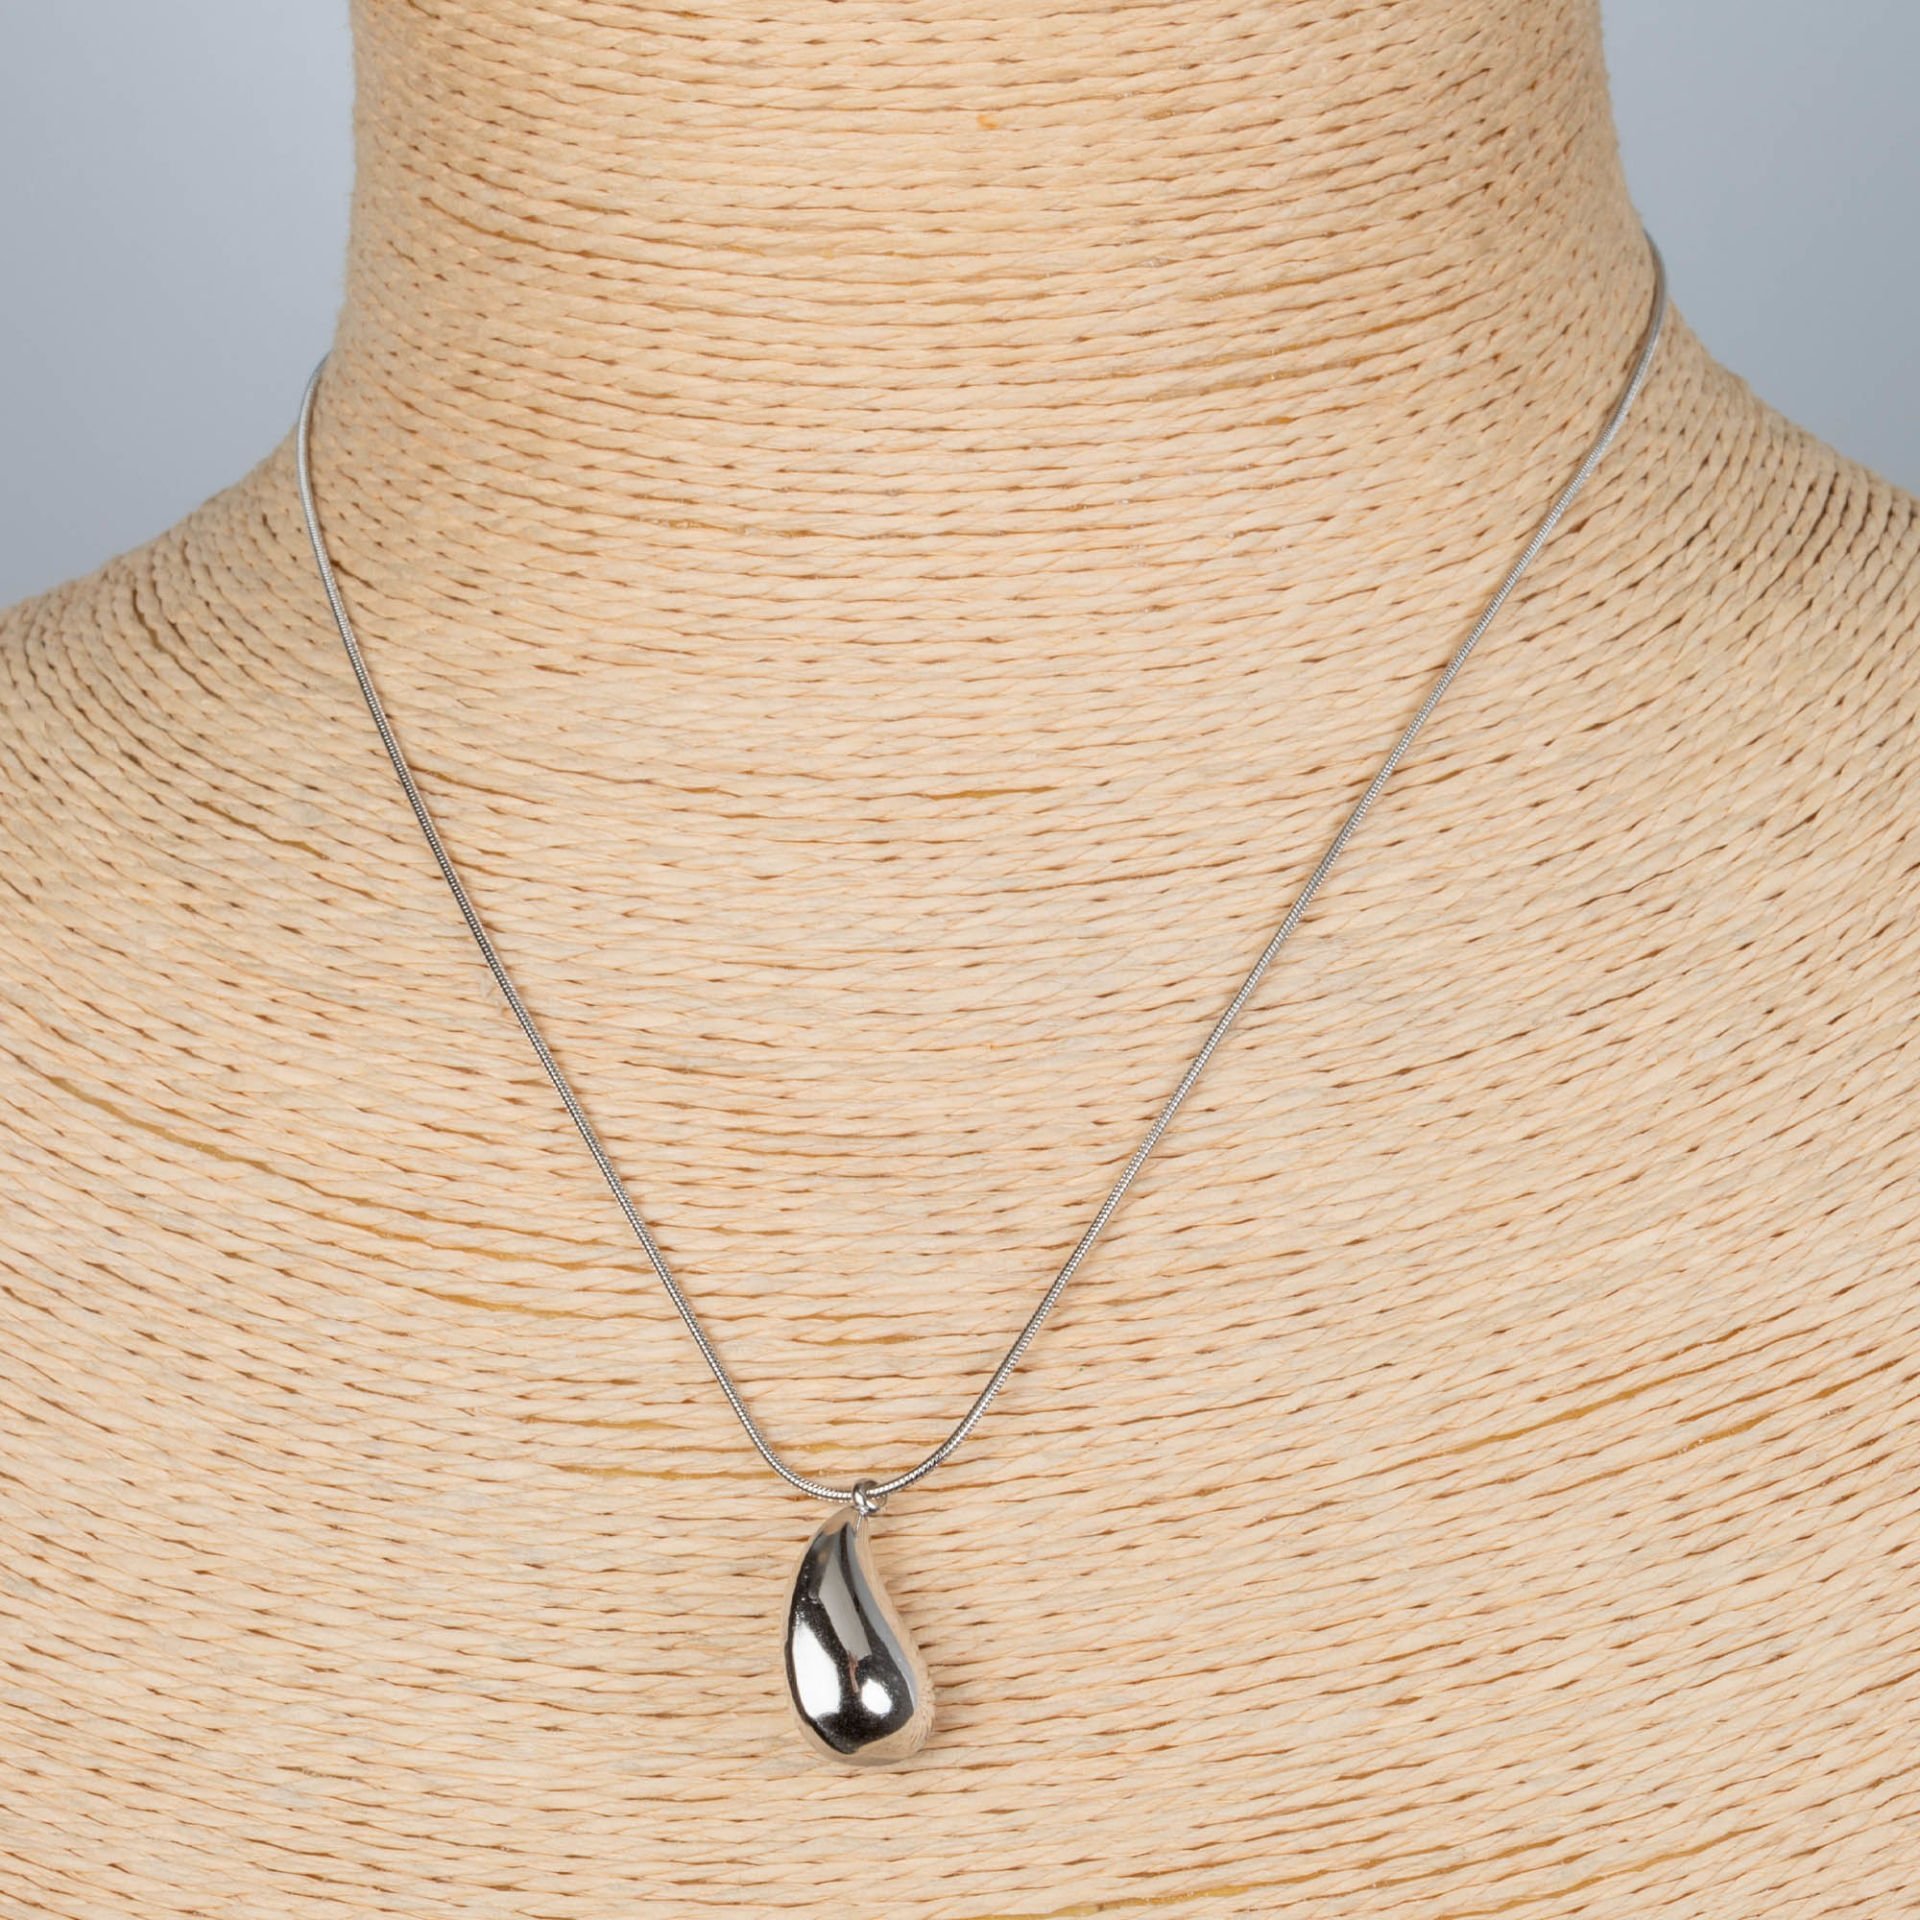 Steel Drop Necklace Chain 40cm 2 Color Options